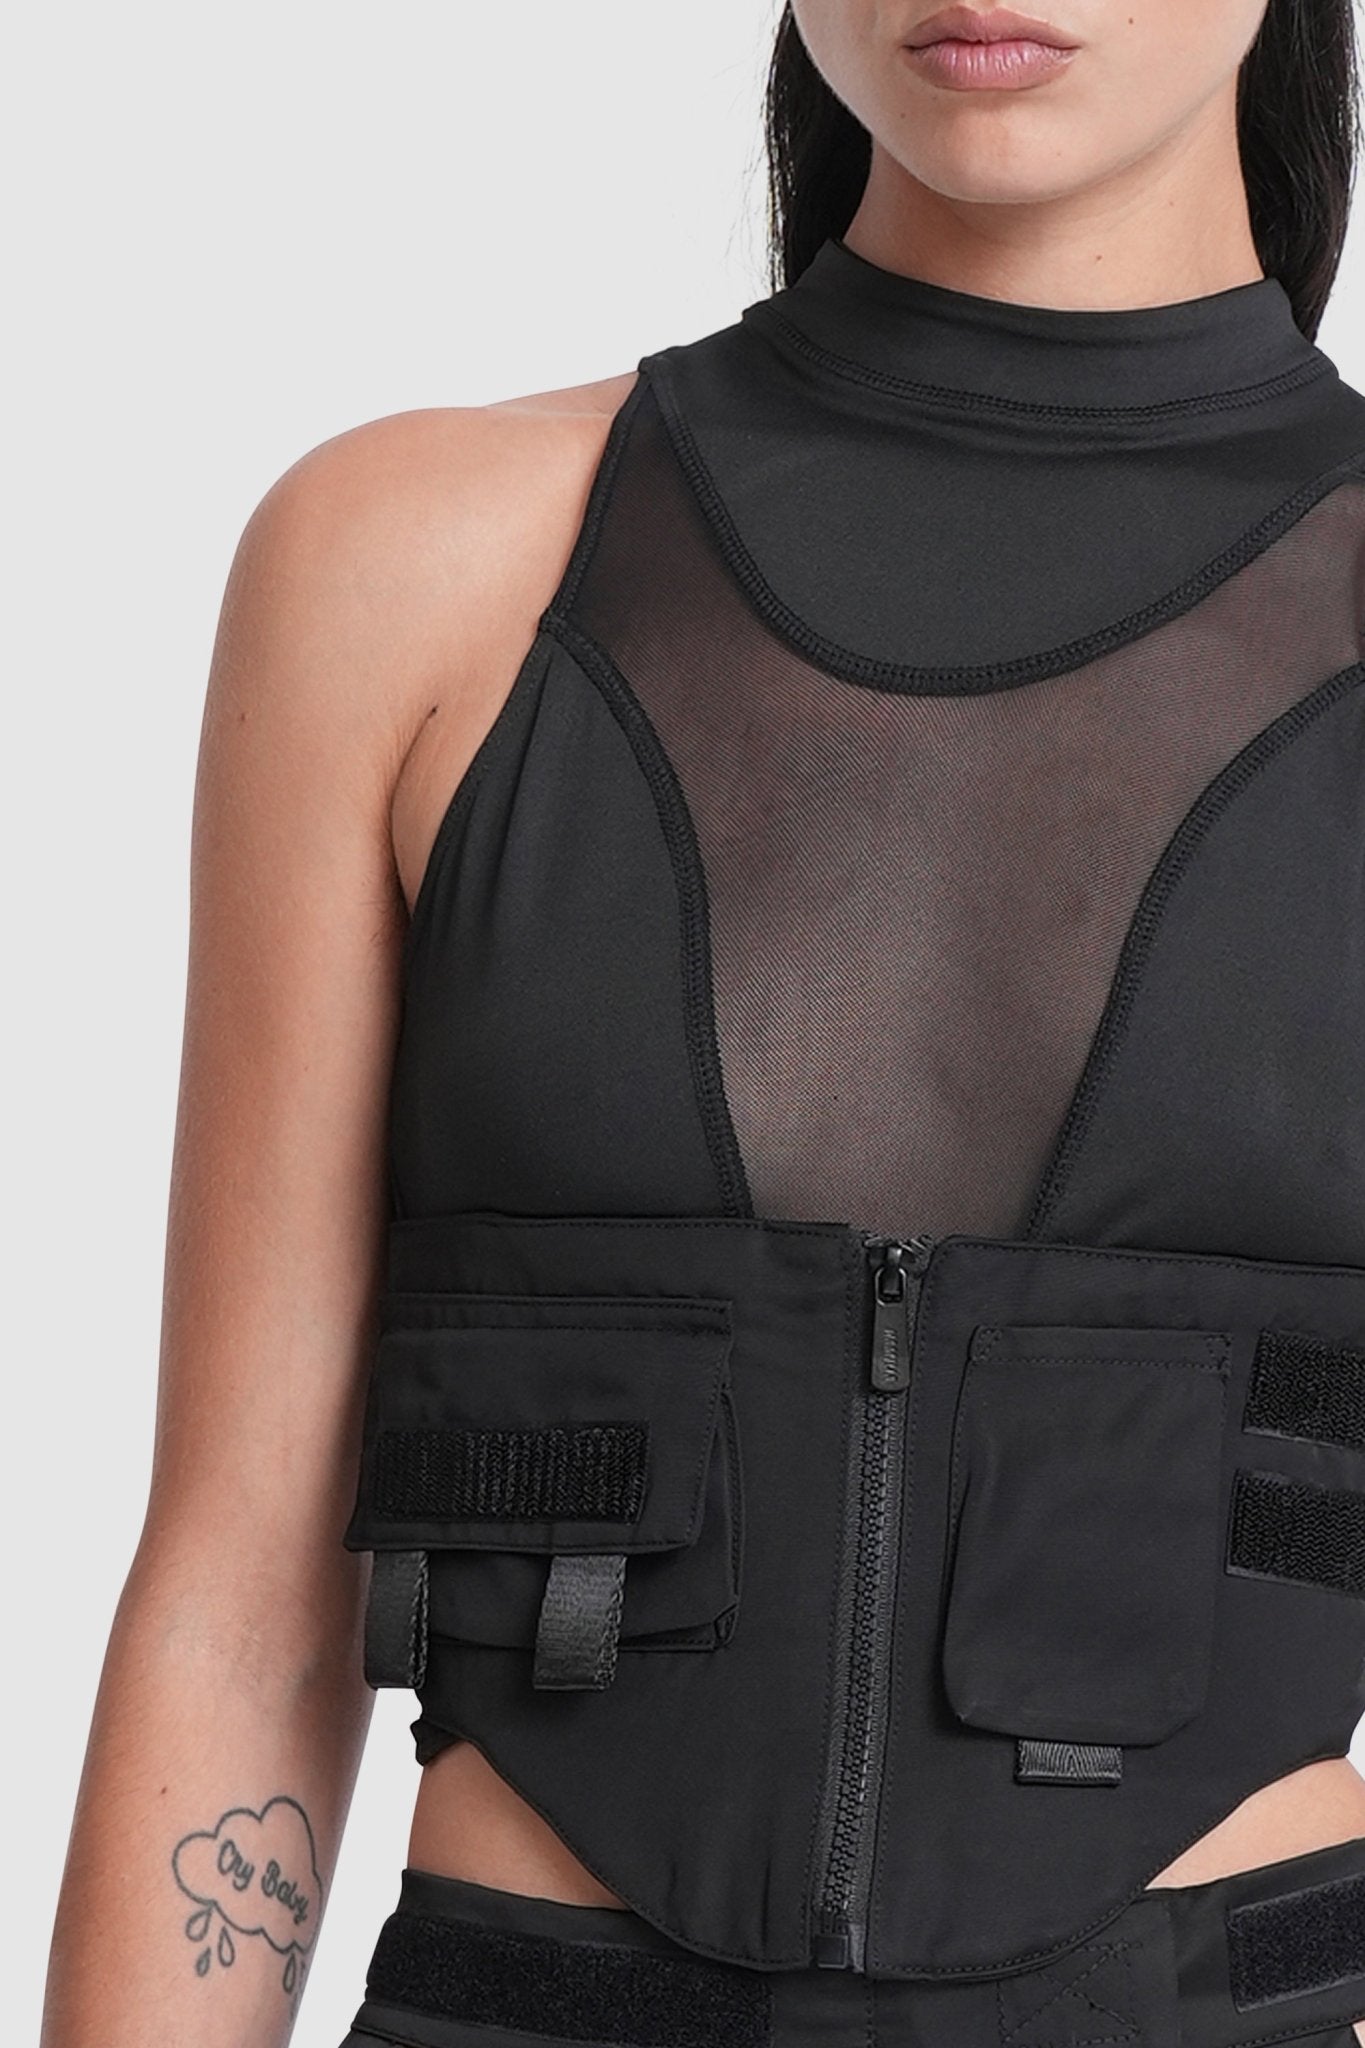 NAMILIA tactical corset top - XS, black